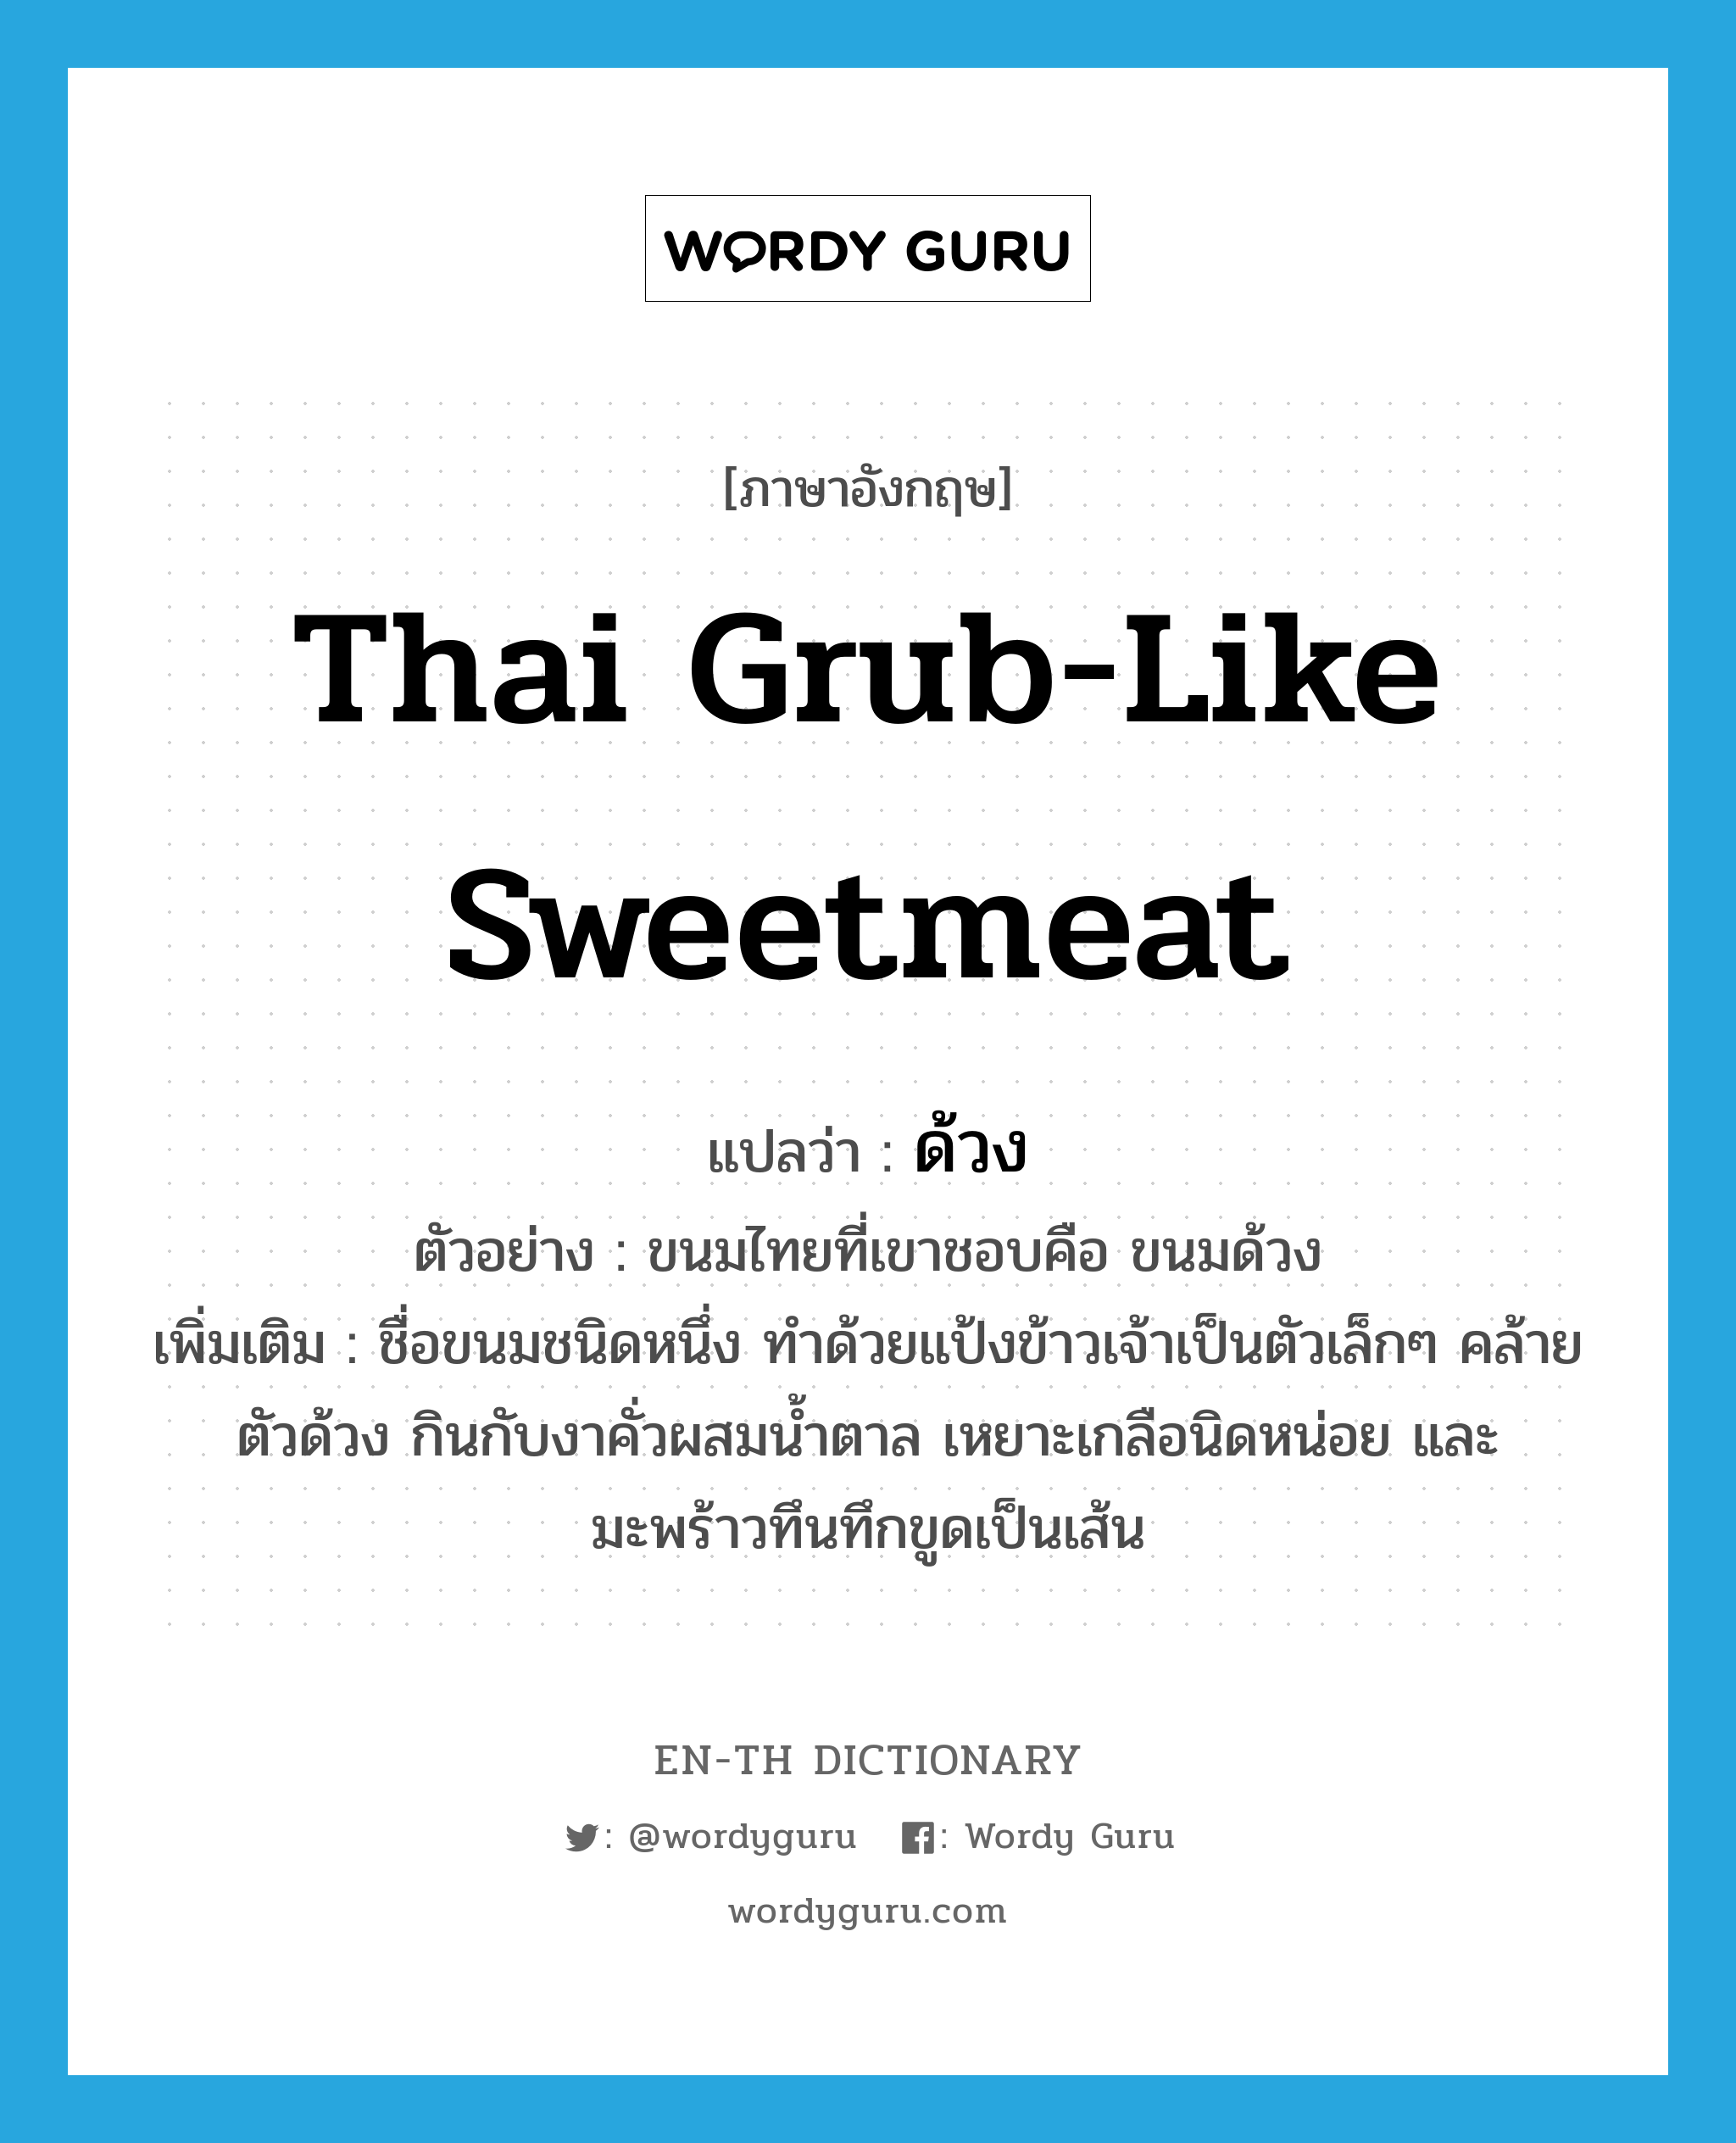 Thai grub-like sweetmeat แปลว่า?, คำศัพท์ภาษาอังกฤษ Thai grub-like sweetmeat แปลว่า ด้วง ประเภท N ตัวอย่าง ขนมไทยที่เขาชอบคือ ขนมด้วง เพิ่มเติม ชื่อขนมชนิดหนึ่ง ทำด้วยแป้งข้าวเจ้าเป็นตัวเล็กๆ คล้ายตัวด้วง กินกับงาคั่วผสมน้ำตาล เหยาะเกลือนิดหน่อย และมะพร้าวทึนทึกขูดเป็นเส้น หมวด N